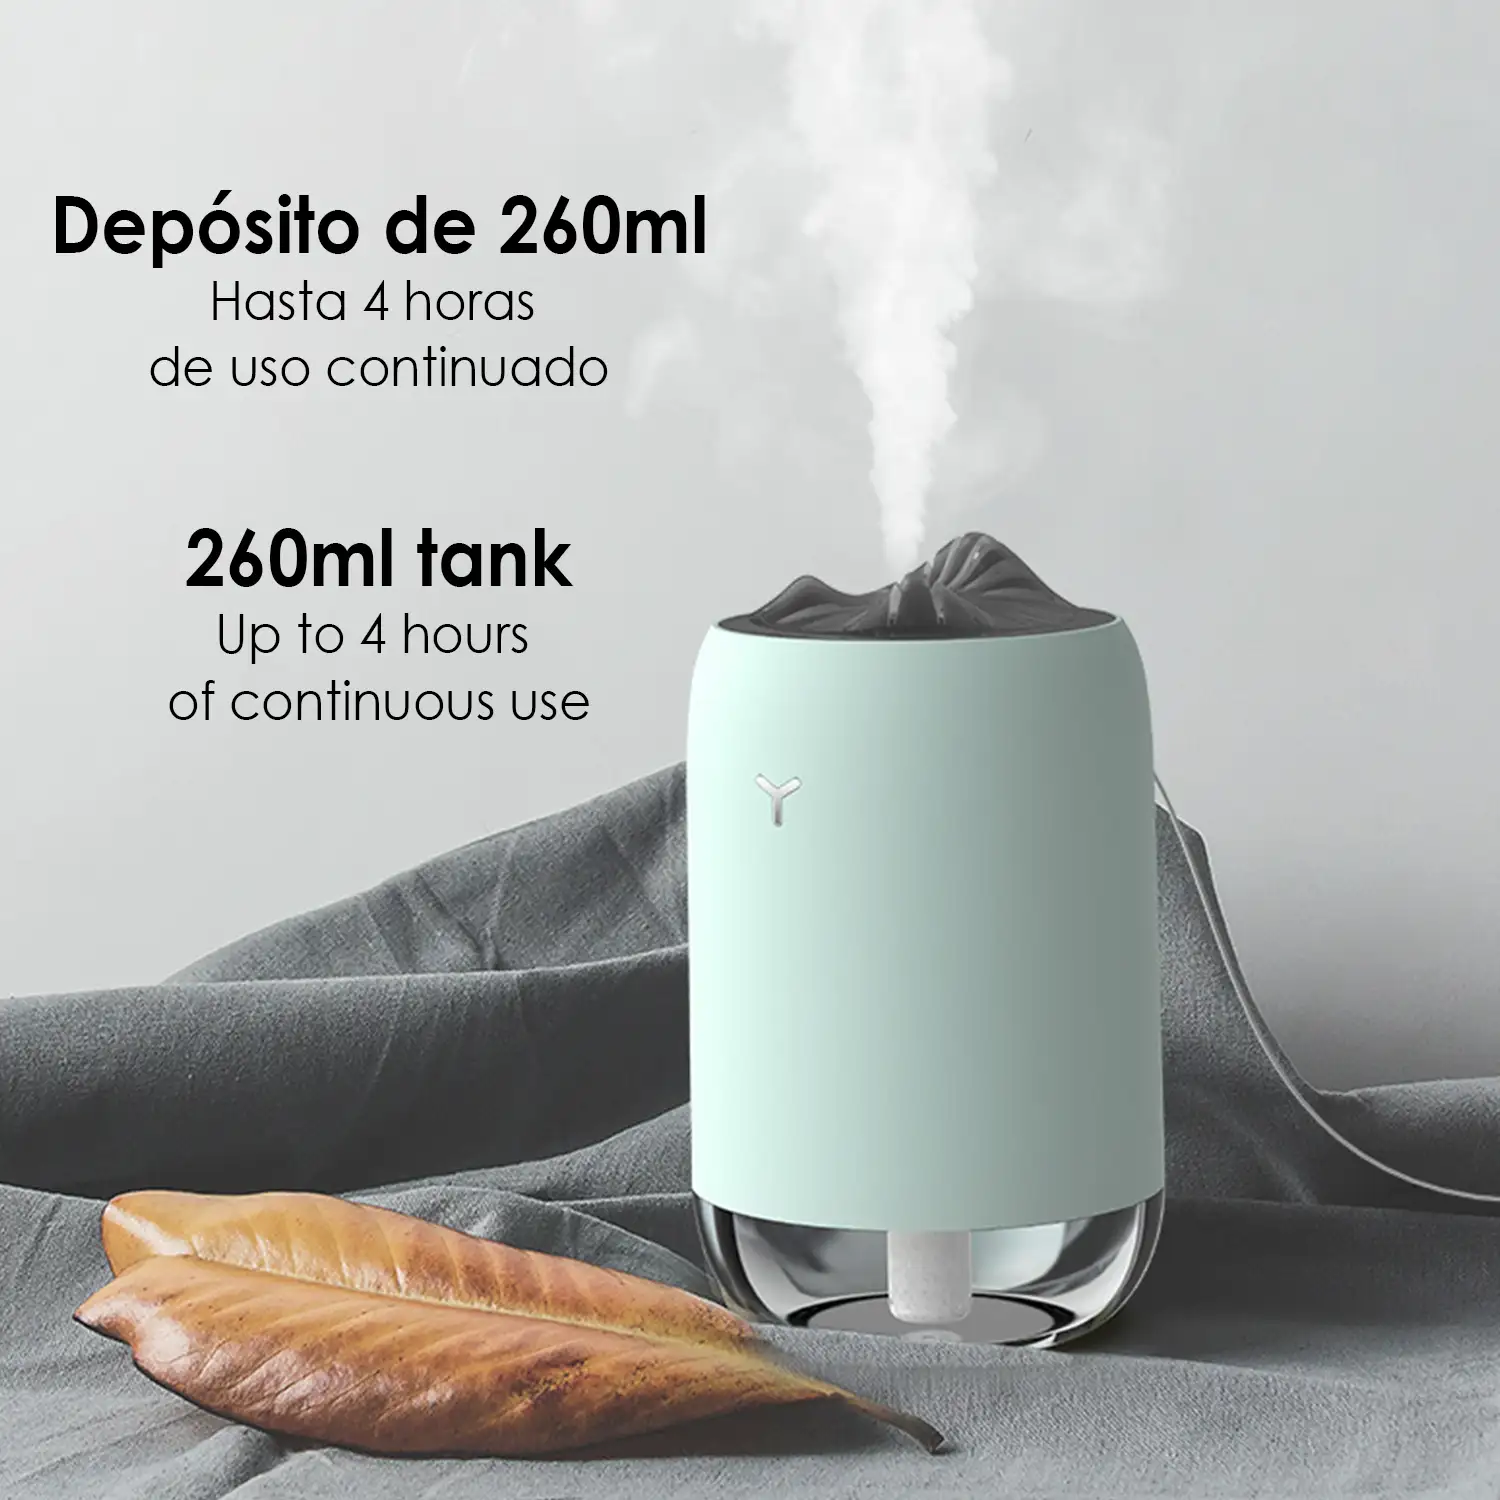 Mini humidificador de 260 ml con luz led ambiental. Función esterilización, compatible con hidroalcohol.